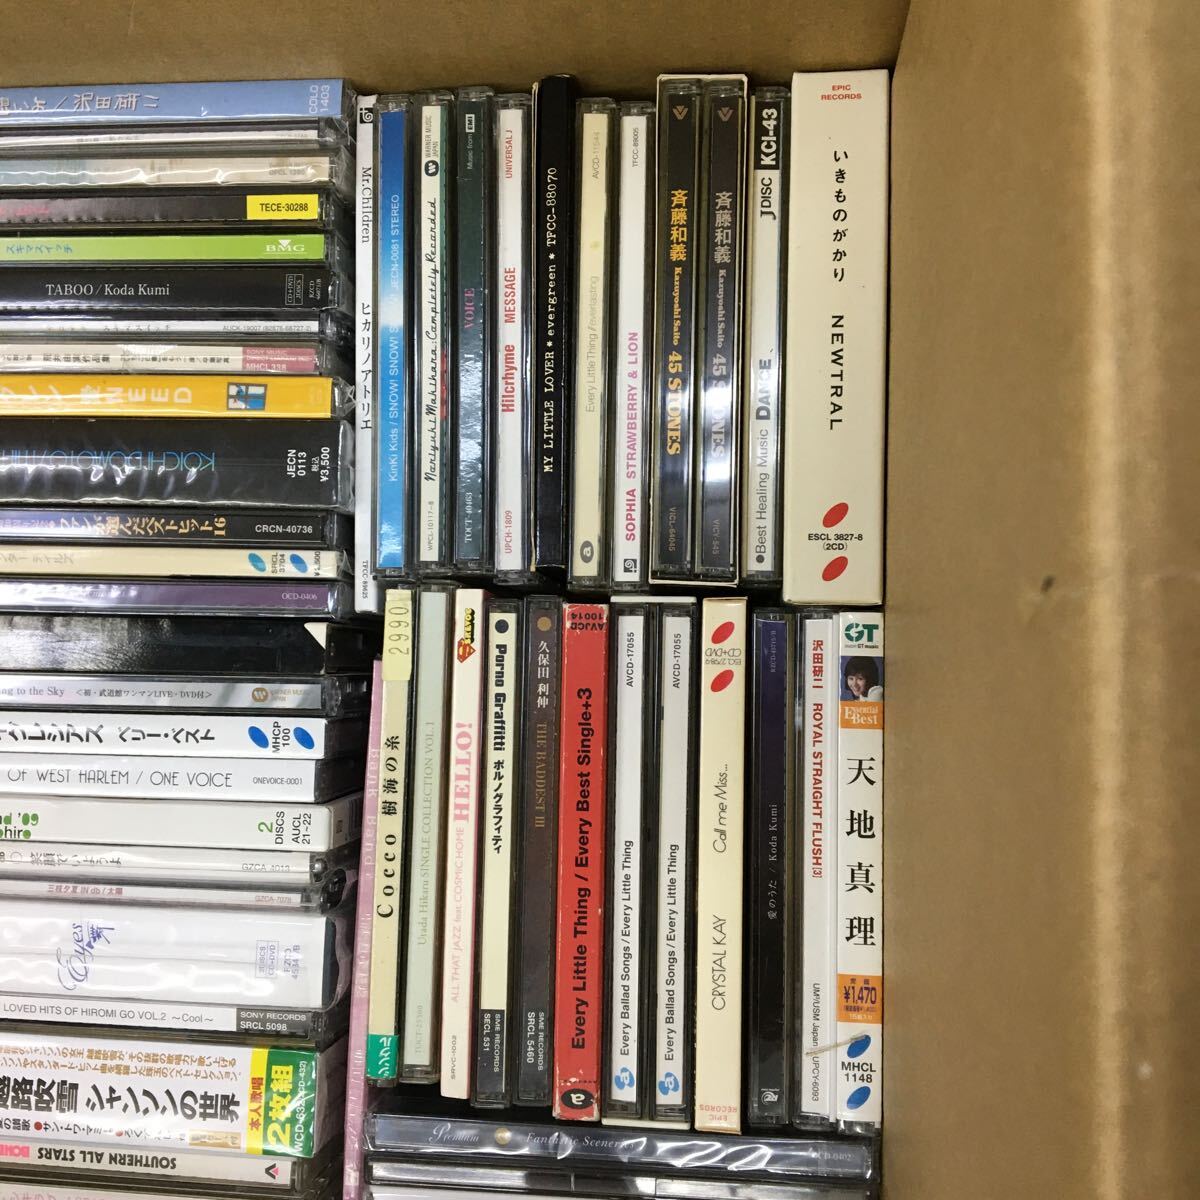 US 240409 B-52 Japanese music CD large amount summarize 150 sheets and more Kudo Shizuka Hirai Ken AI Nogizaka 46 Smap Yazawa Eikichi Matsuda Seiko Koda Kumi Sawada Kenji other operation not yet verification 